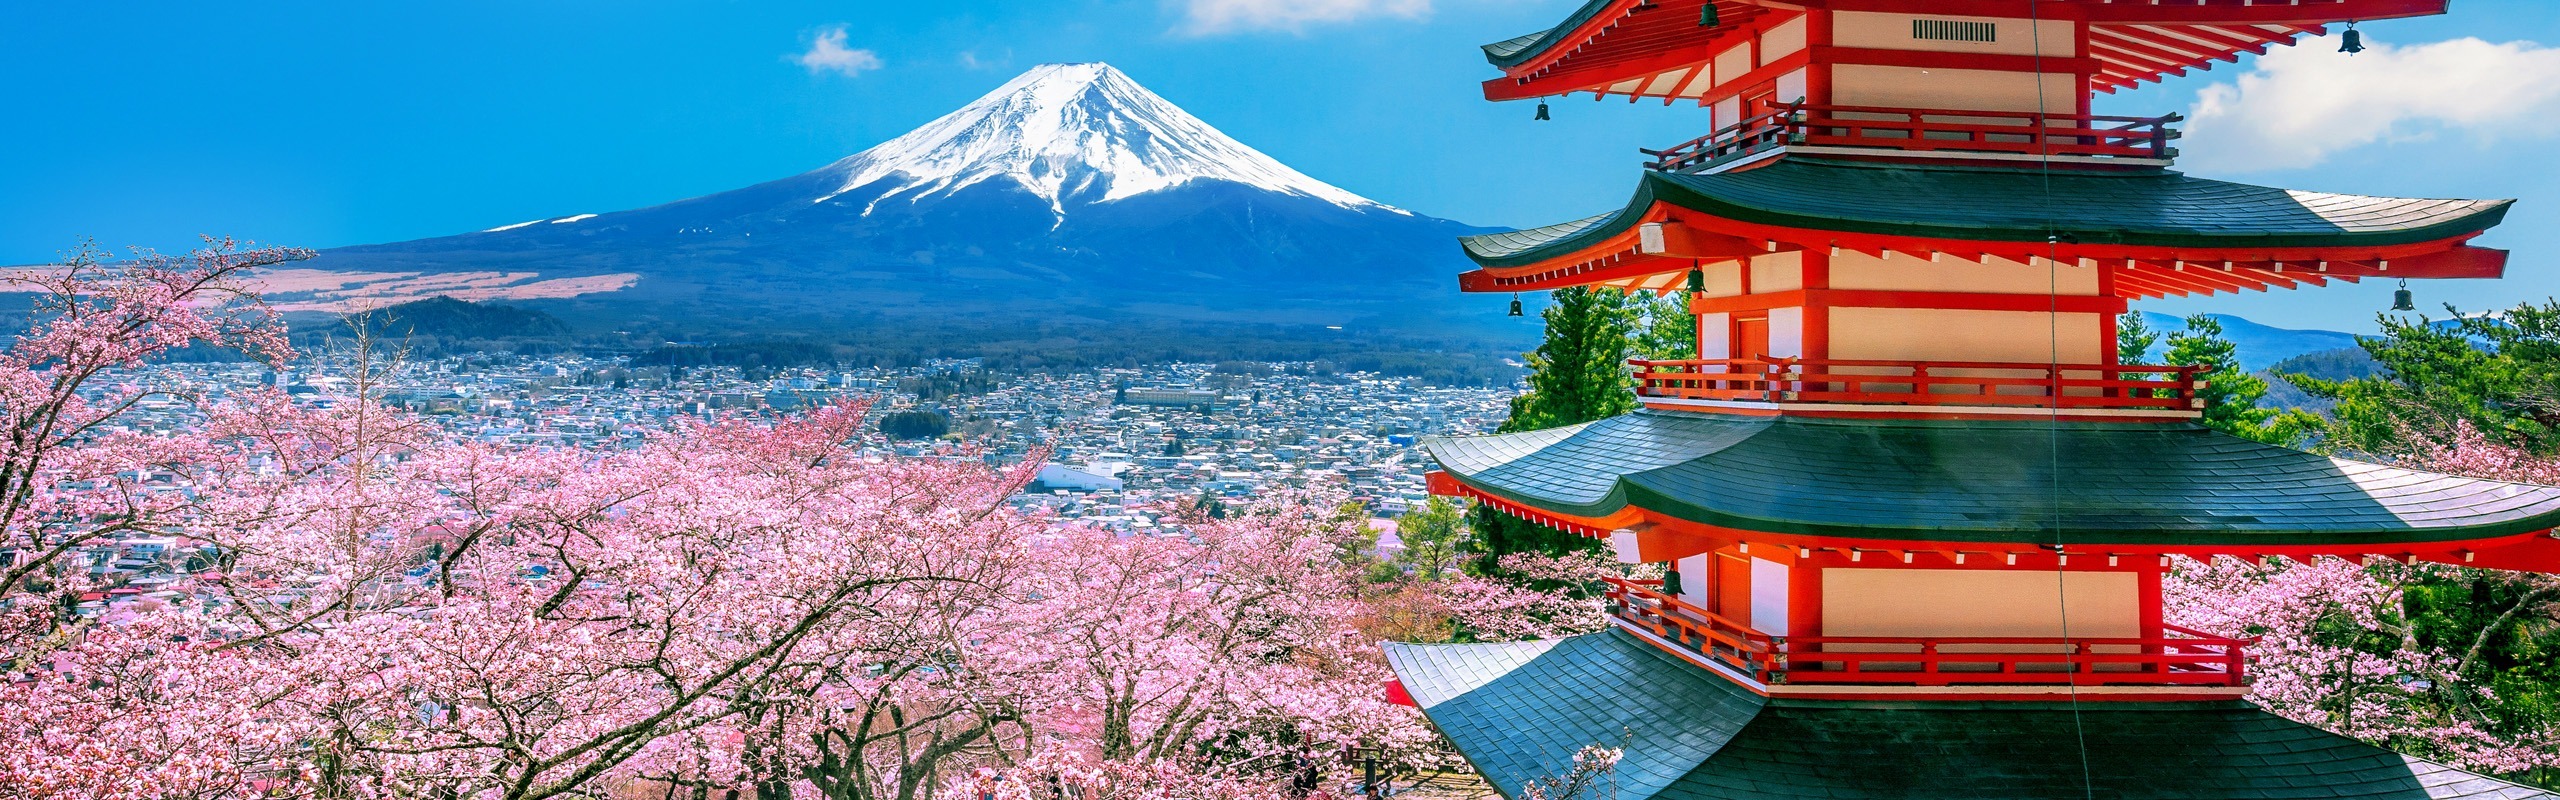 7-Day Japan Cherry Blossom Tour 2025: Essential Springtime Mini-Group Tour